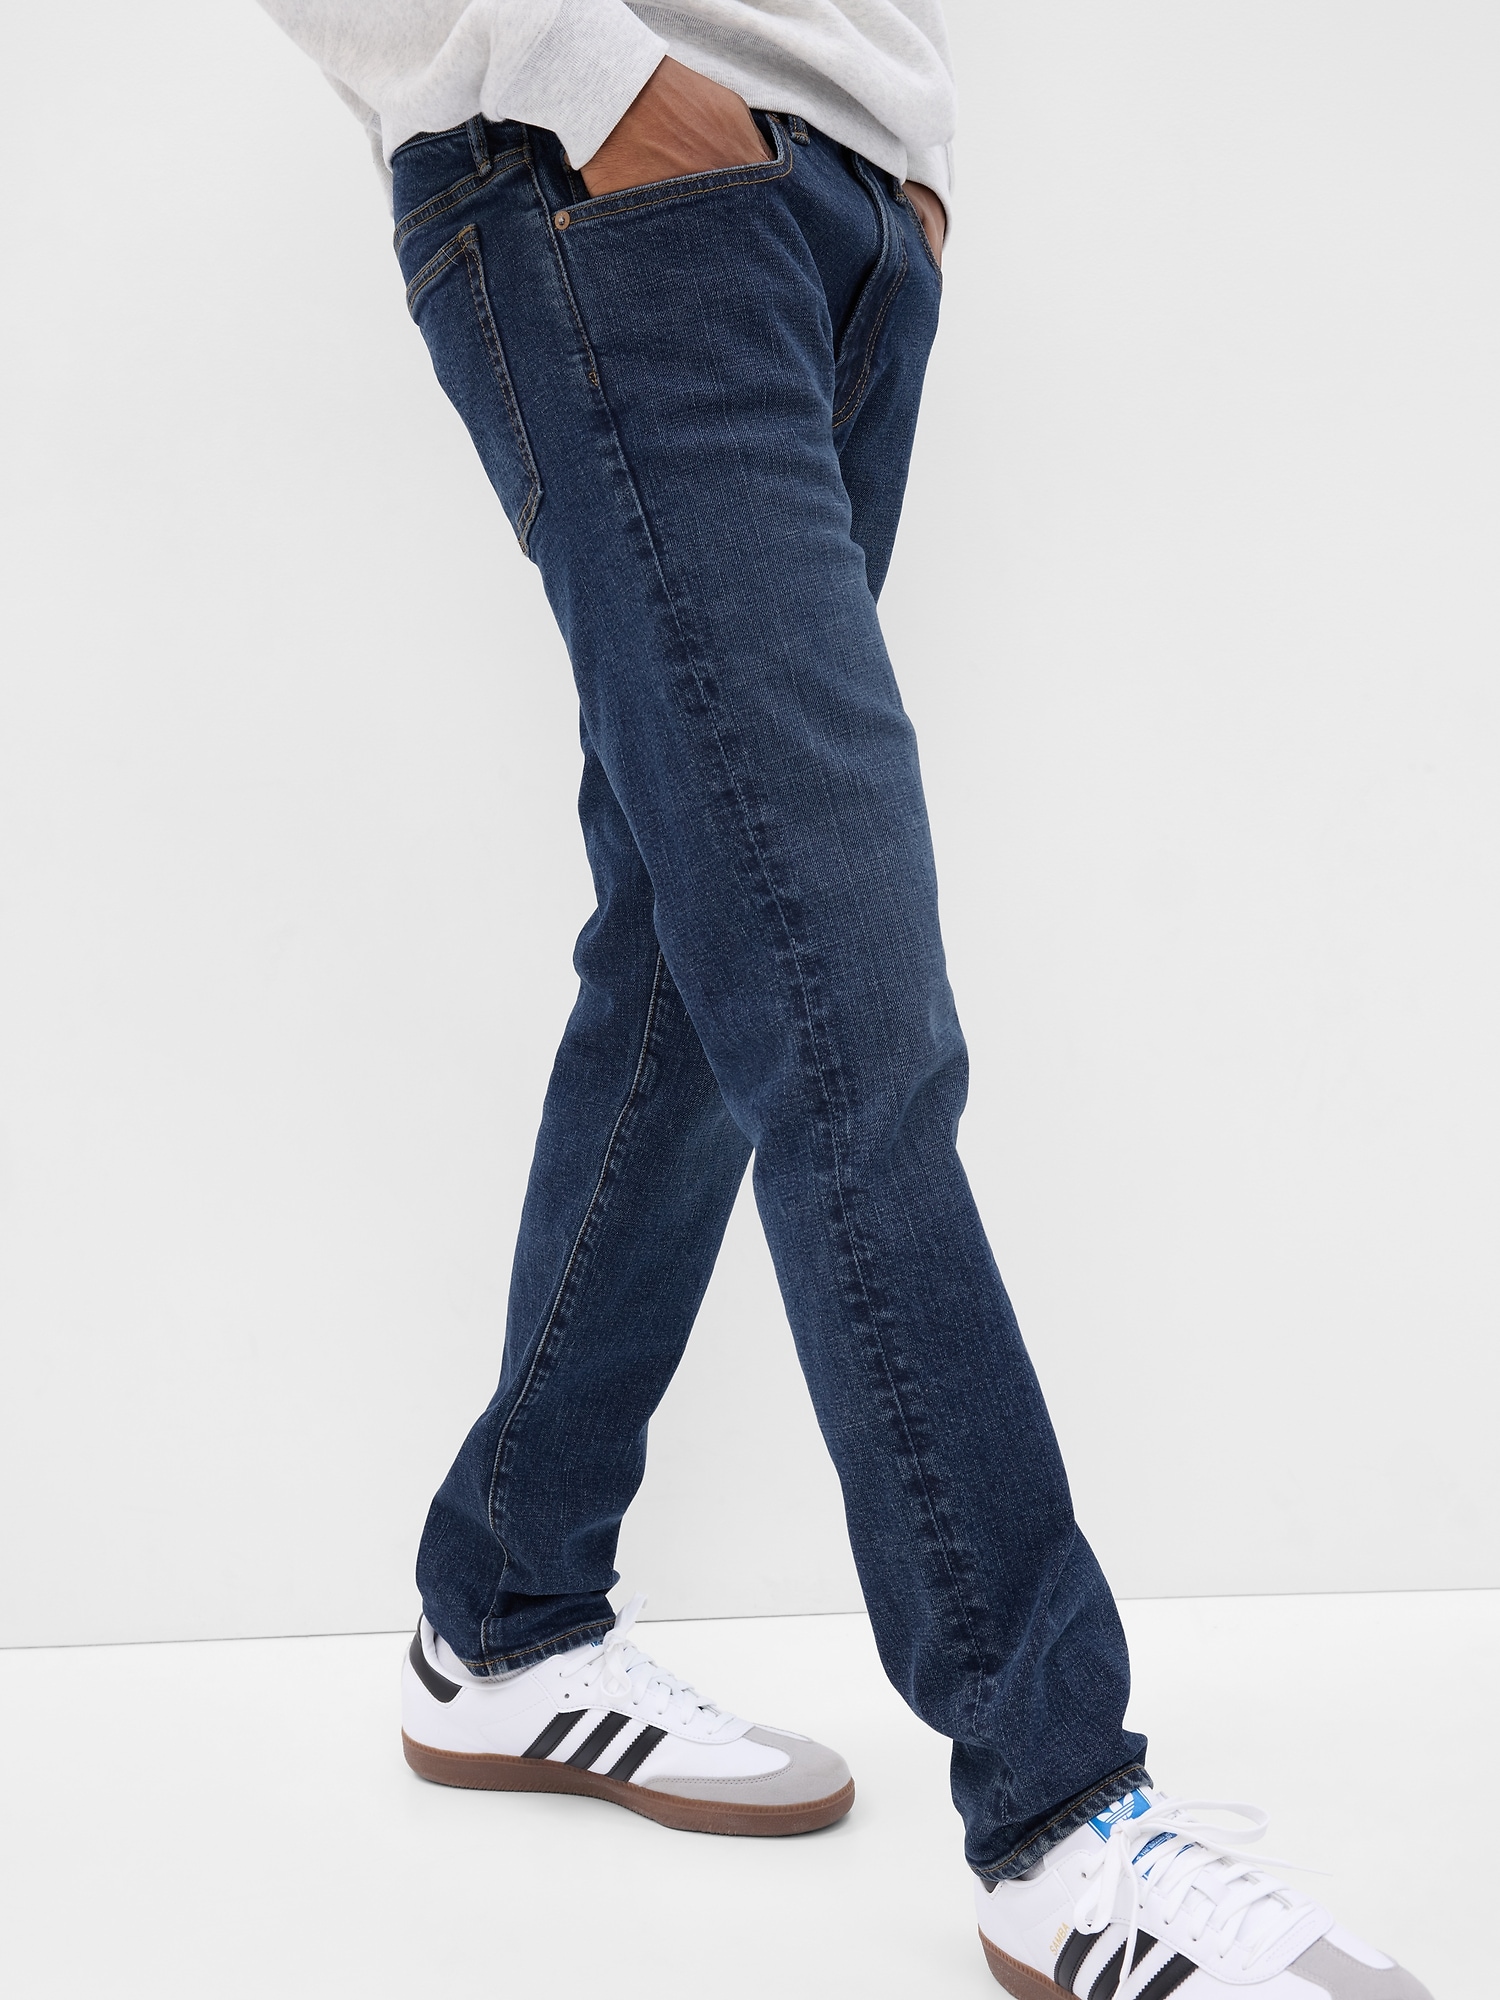 Gap Denim Soft Wear 30x32 (MEASURES 29X32) Slim Gray Stretch Jeans